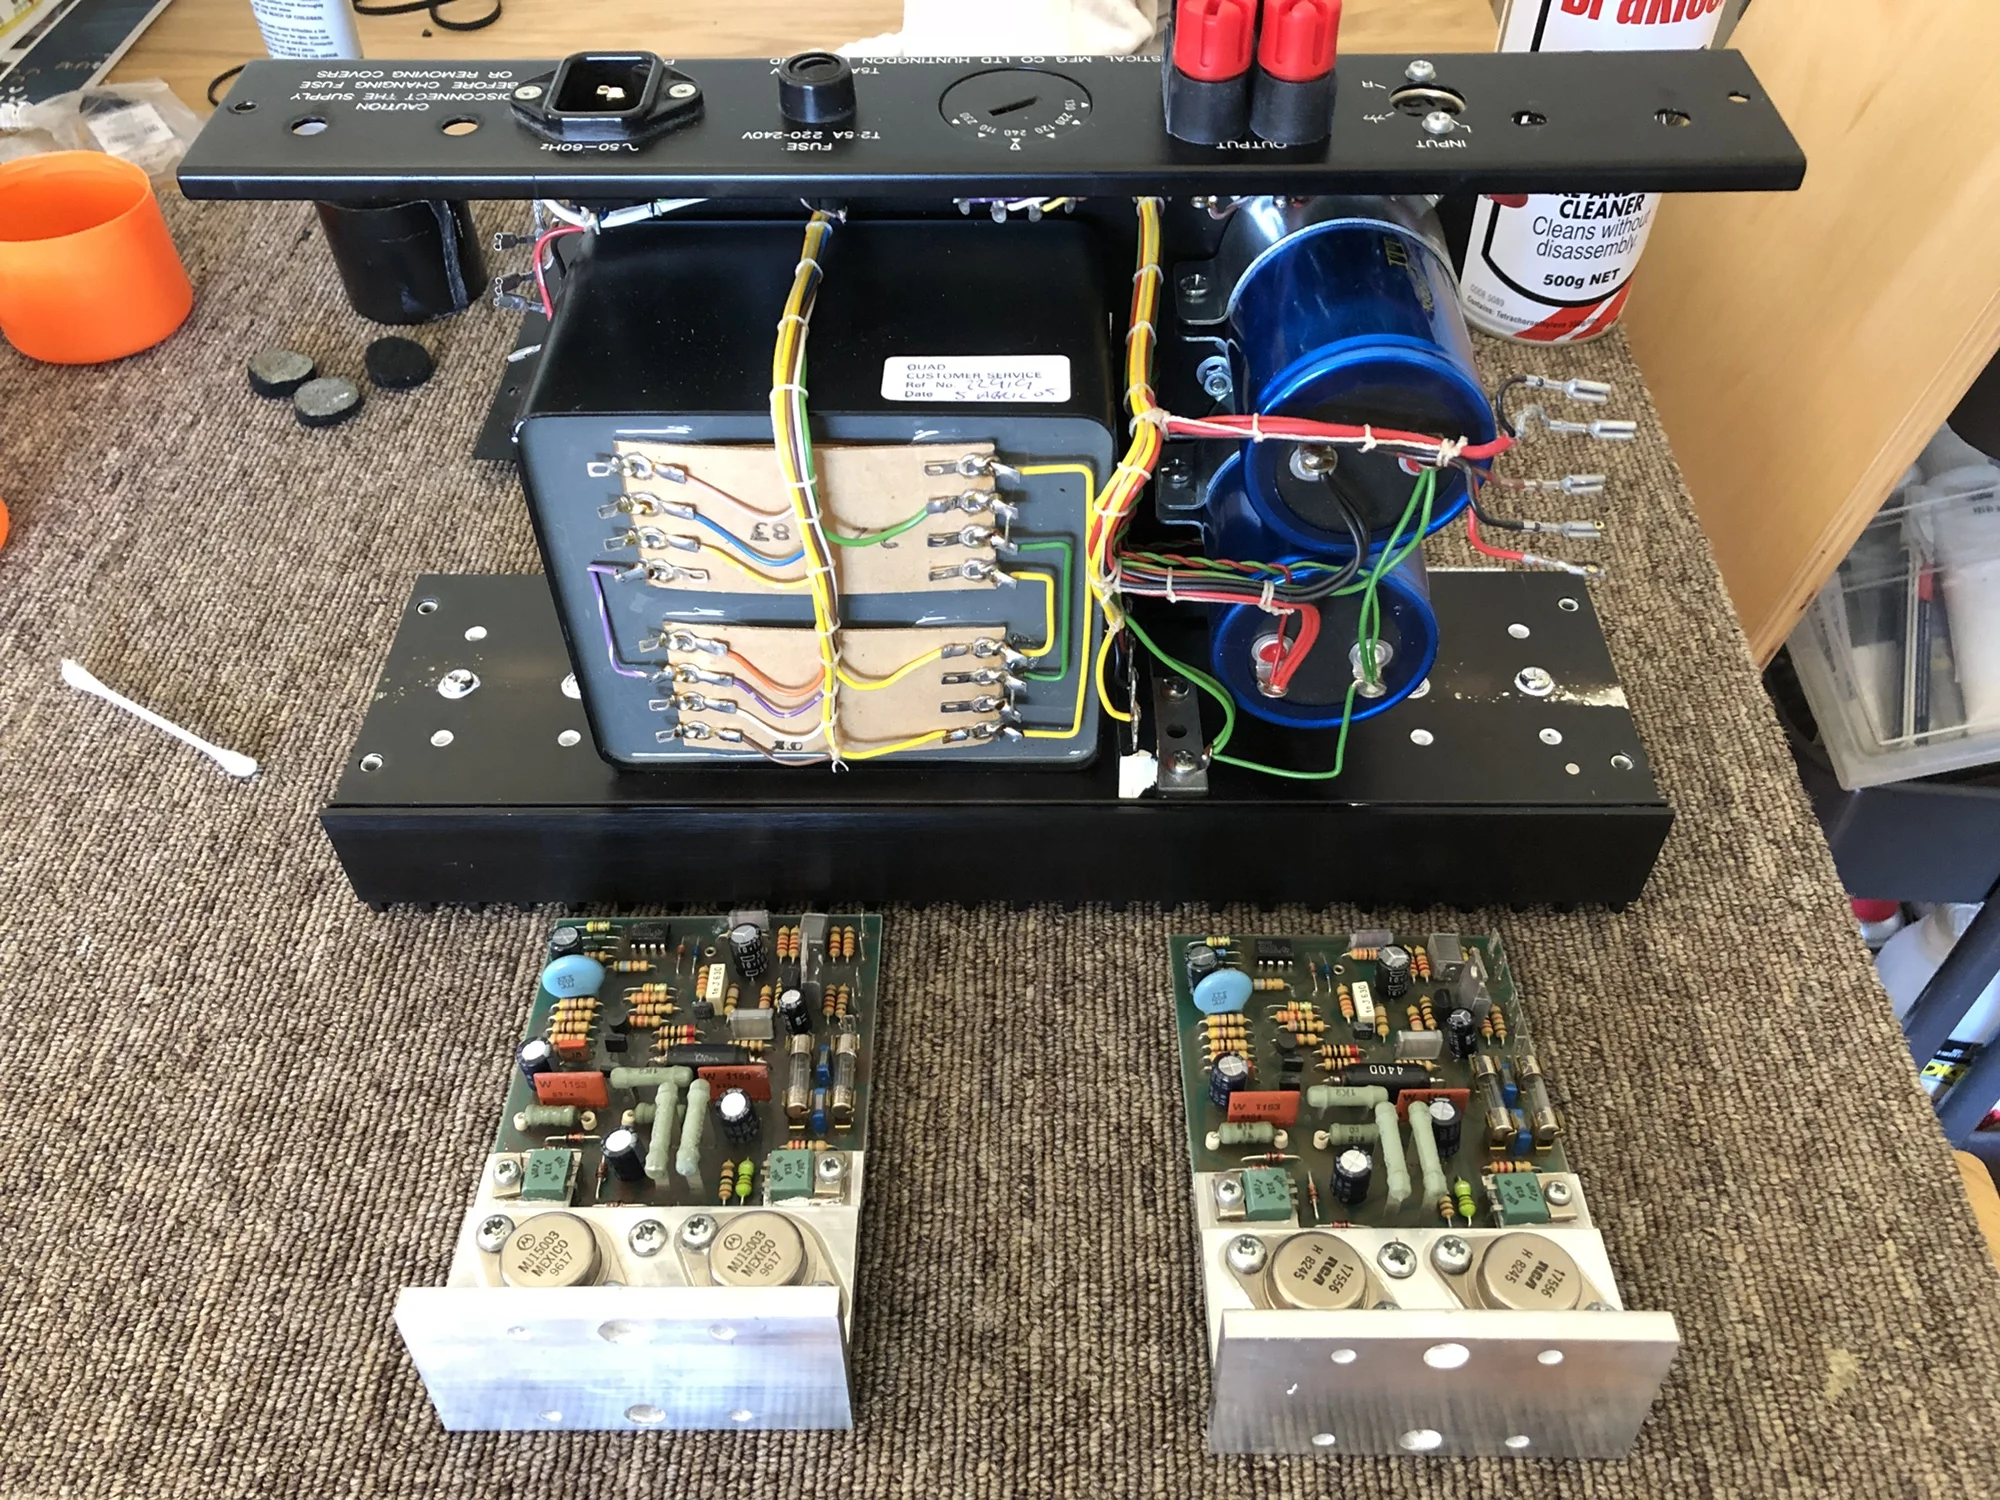 Quad 405 / 405-2 Power Amplifier Review